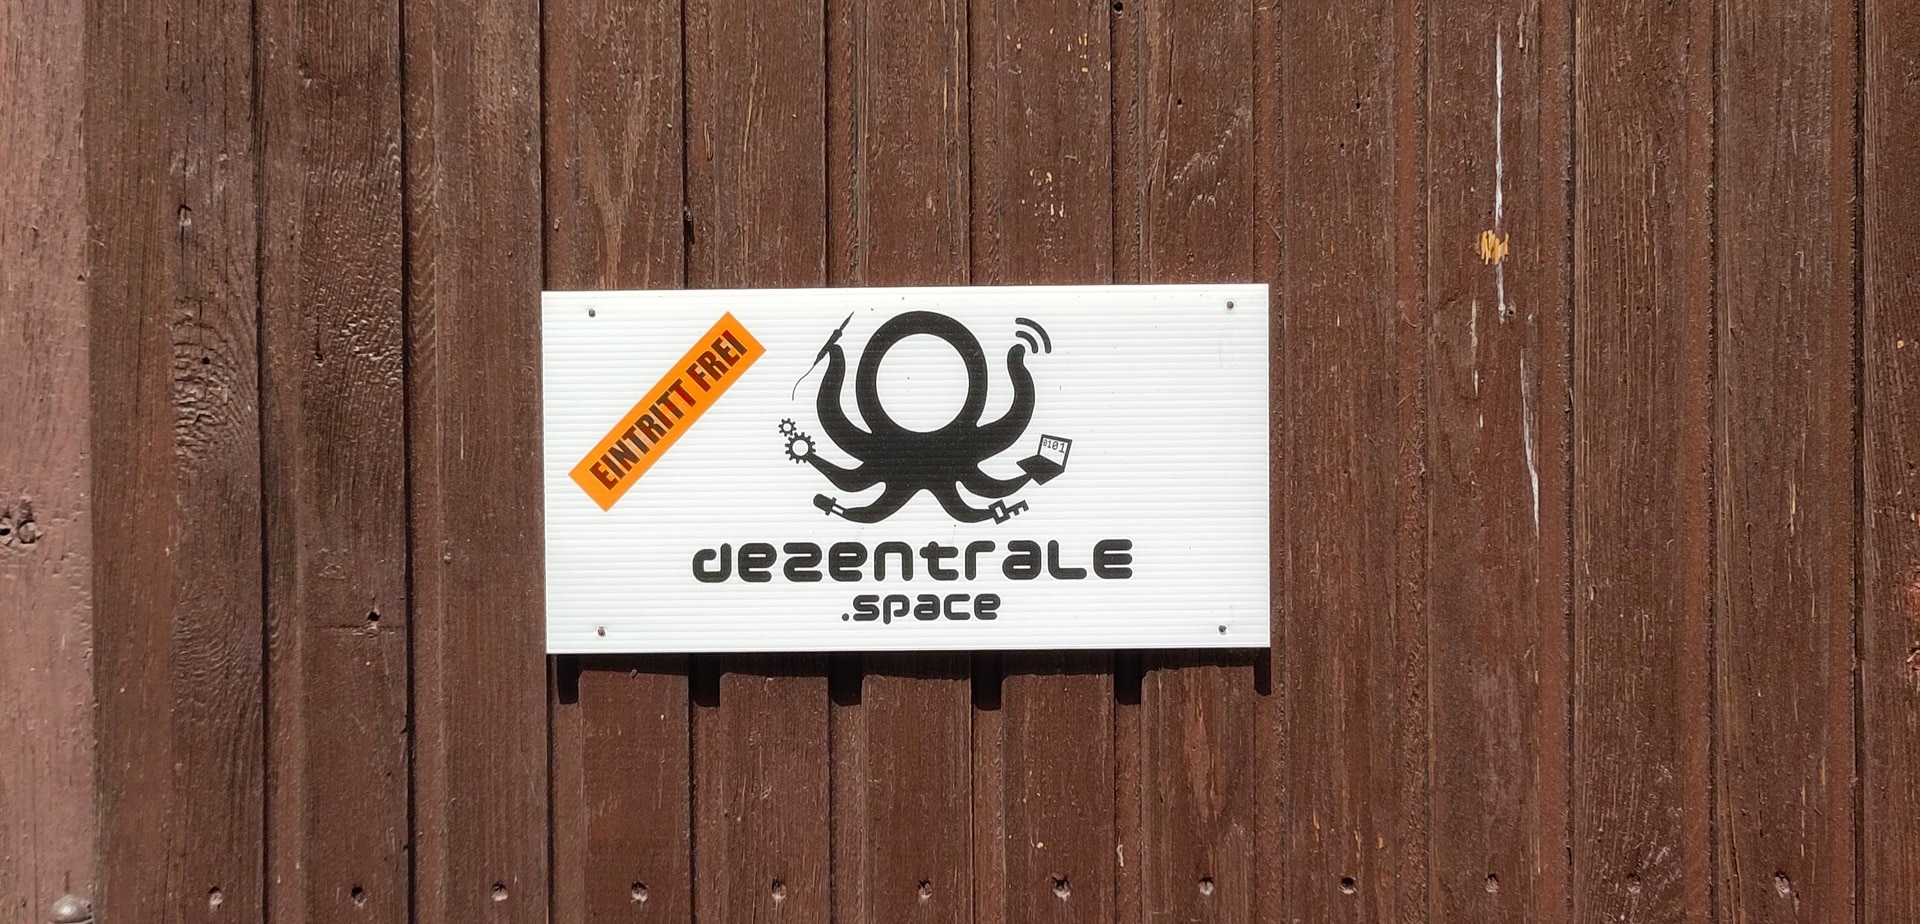 Eine braune HolztÃ¼r mit angebrachtem Schild "dezentrale.space Eintritt Frei"